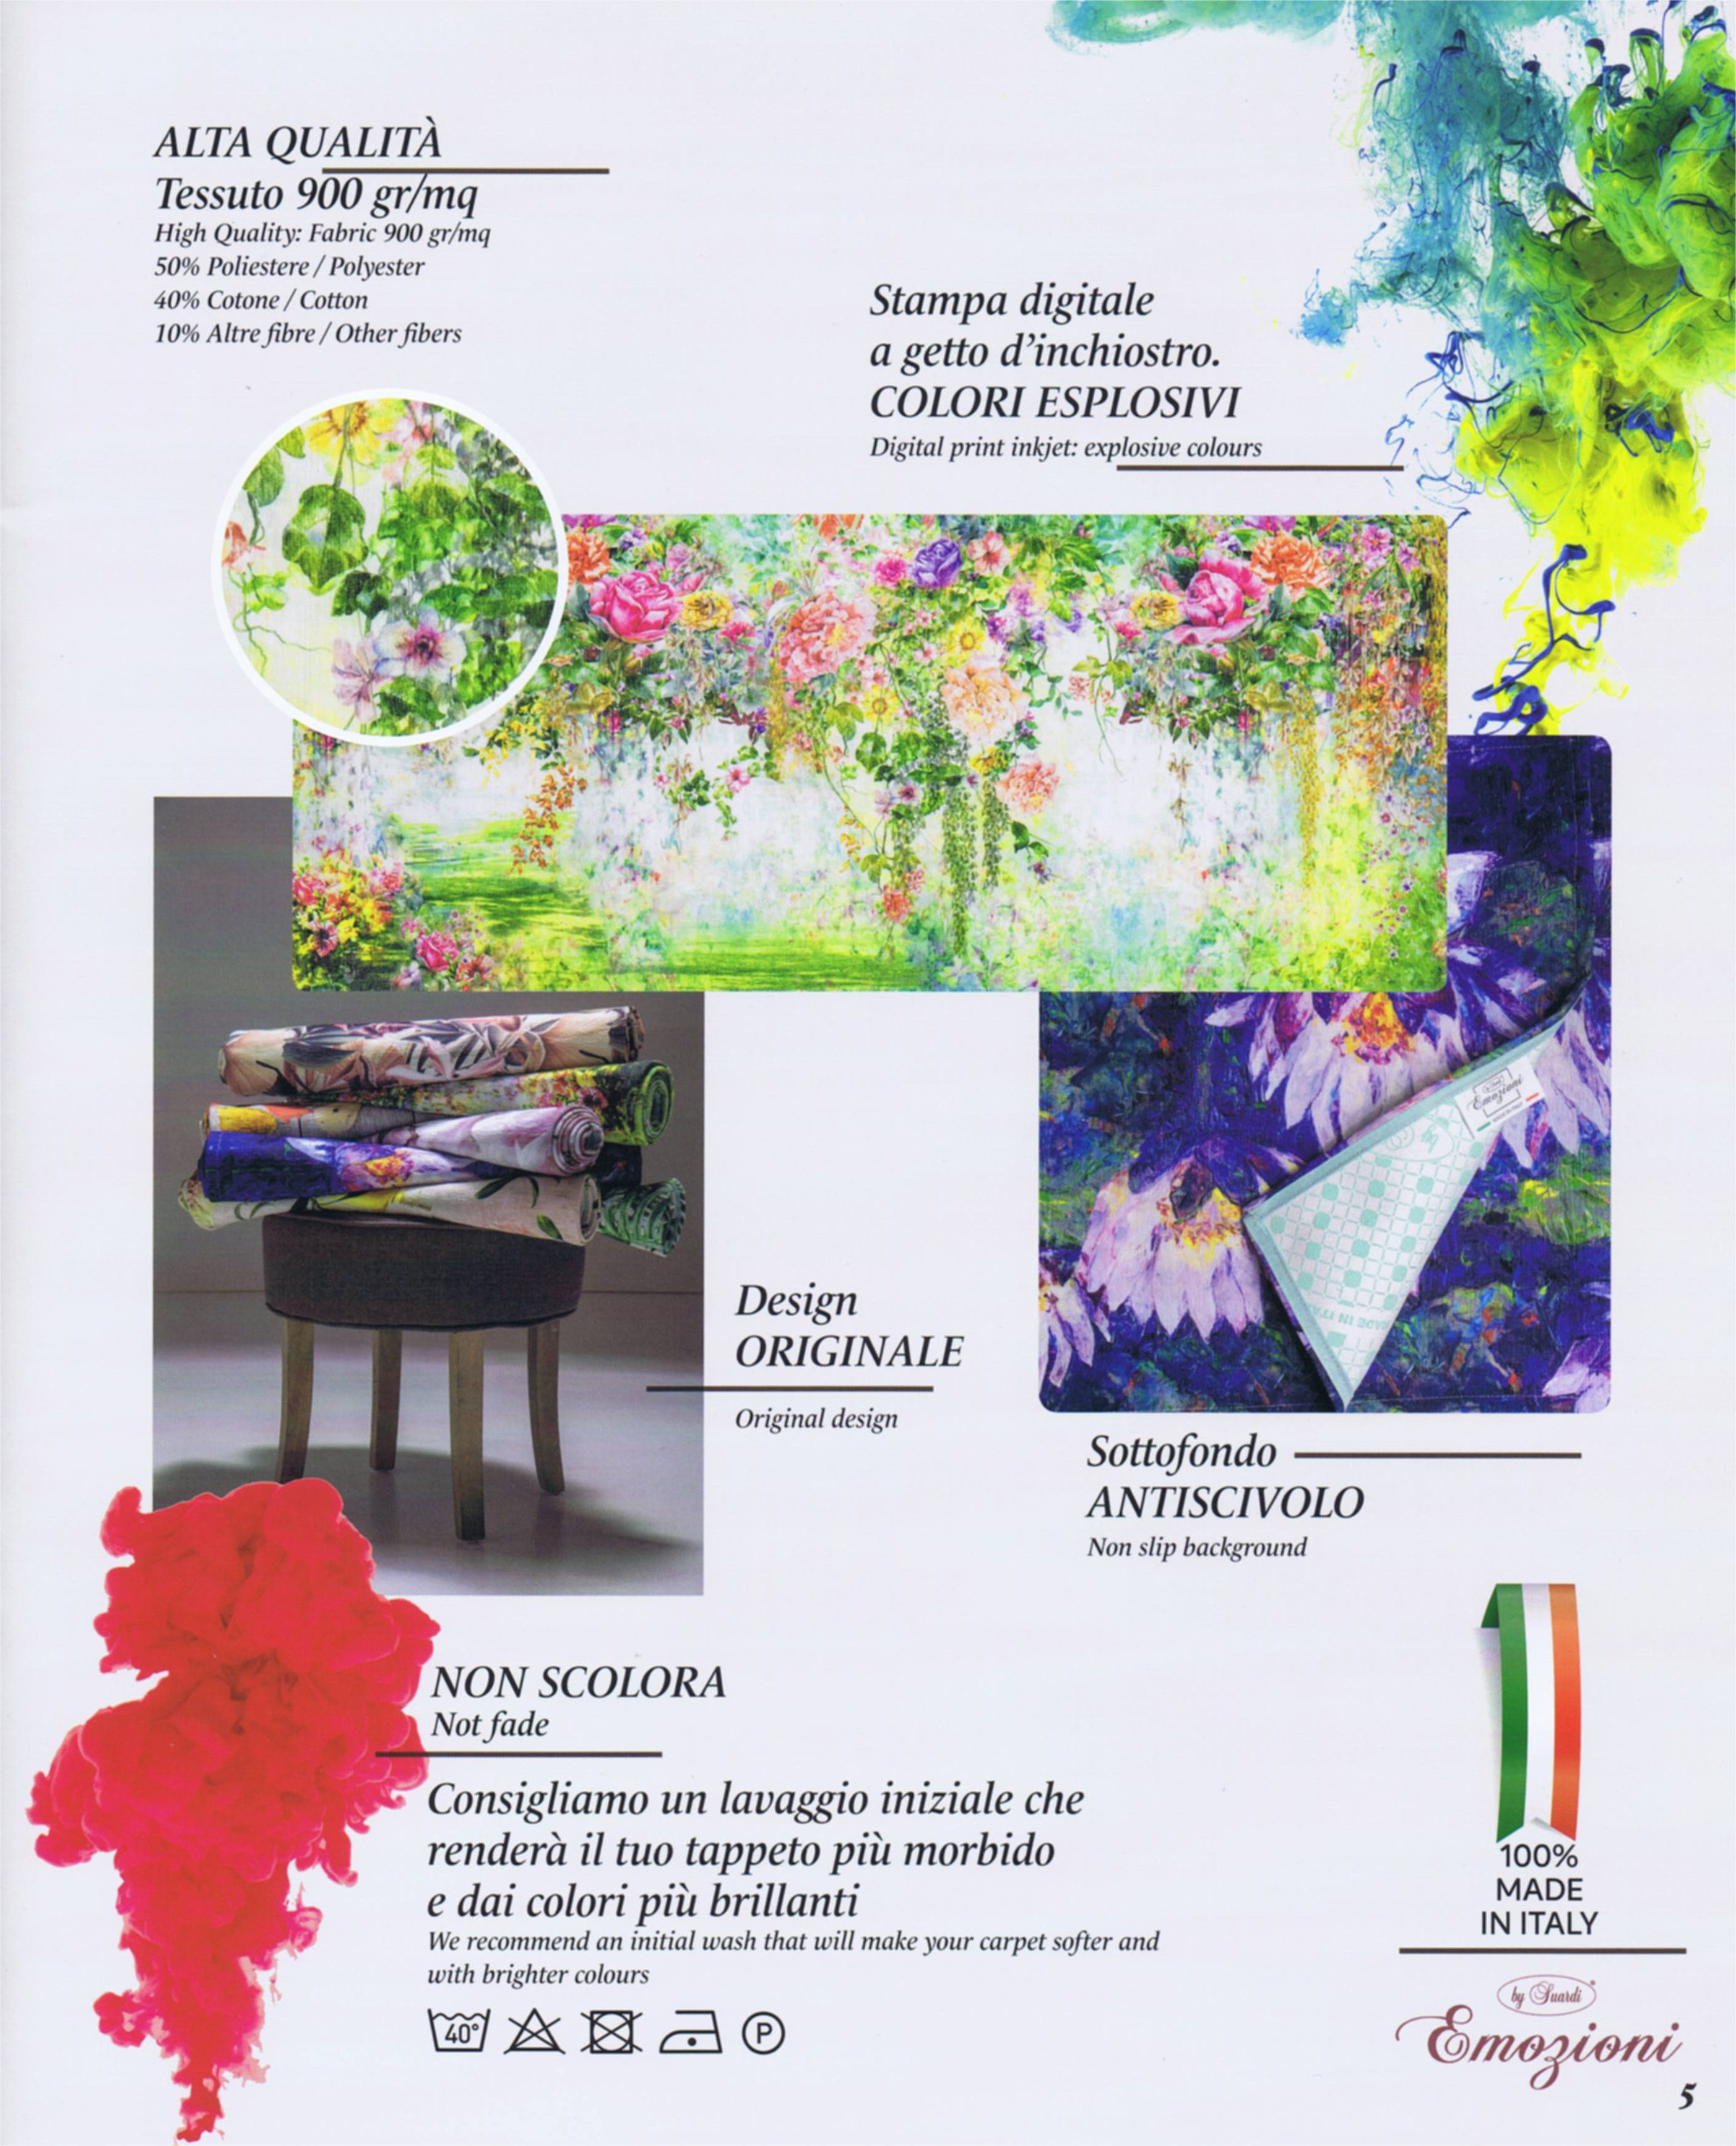 Wild Tappeto Arredo Emozioni D'Artista jaquard 100% made in Italy by Suardi  - Maresca Home Decor